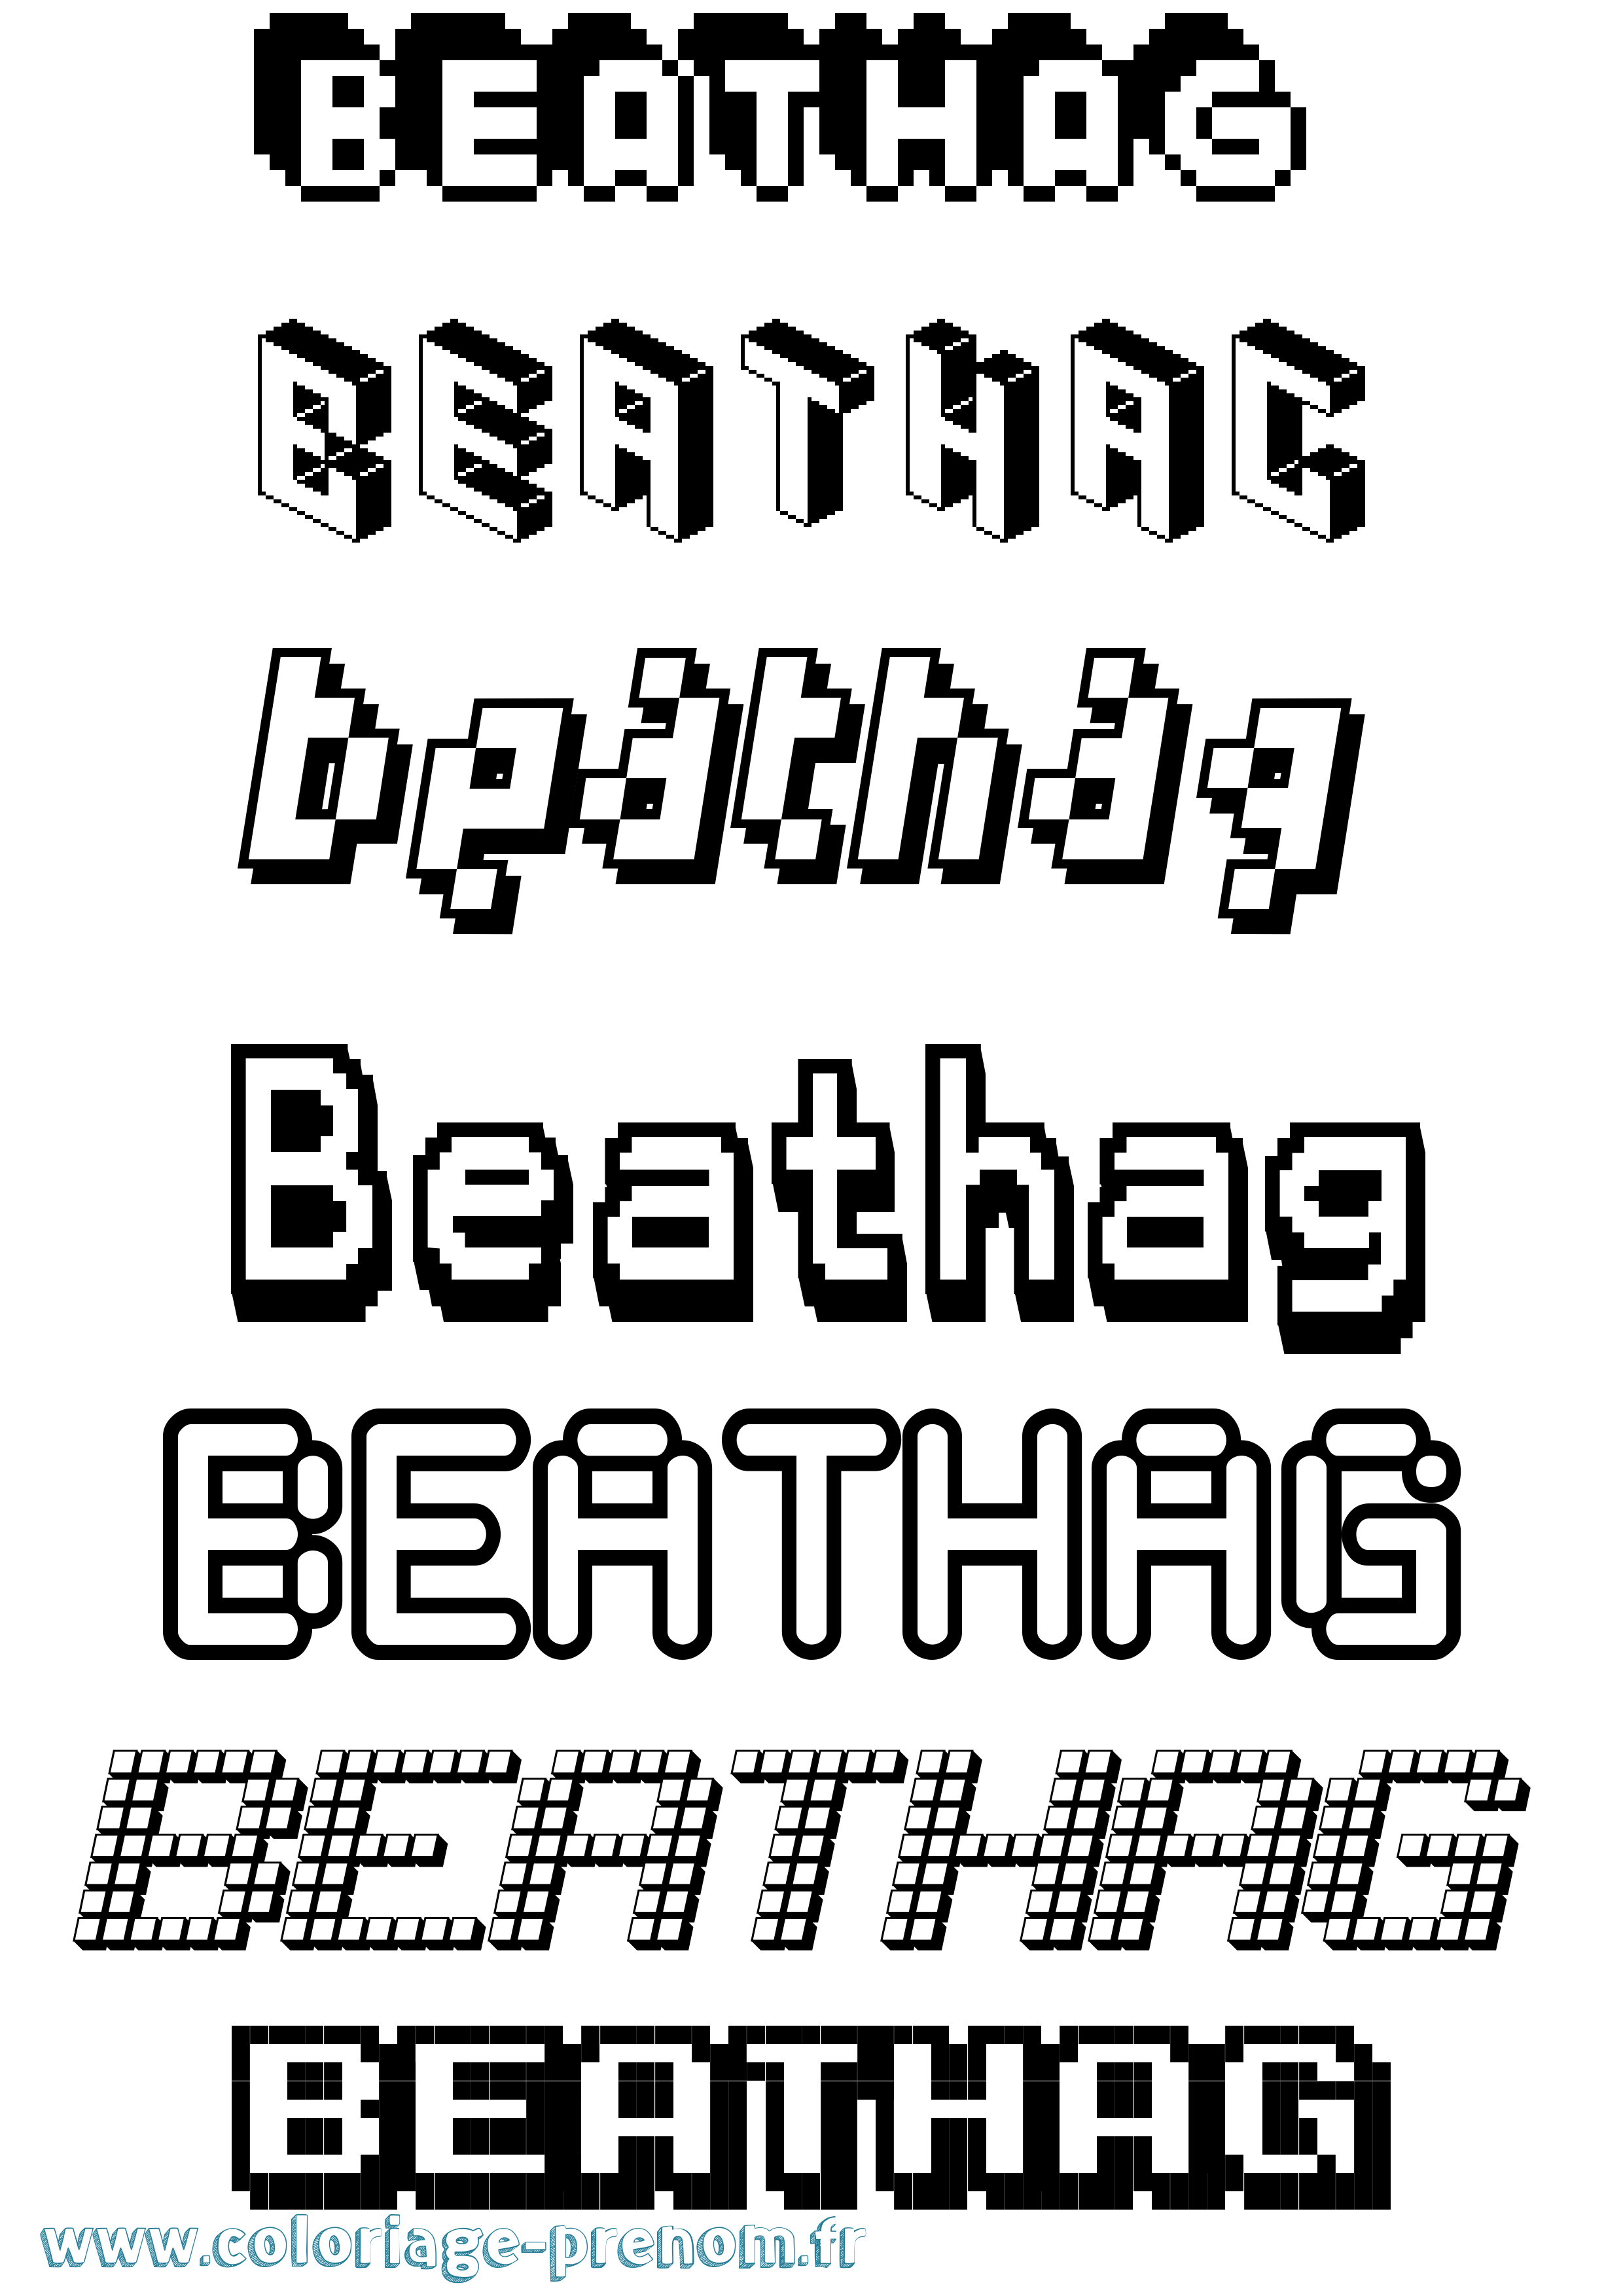 Coloriage prénom Beathag Pixel